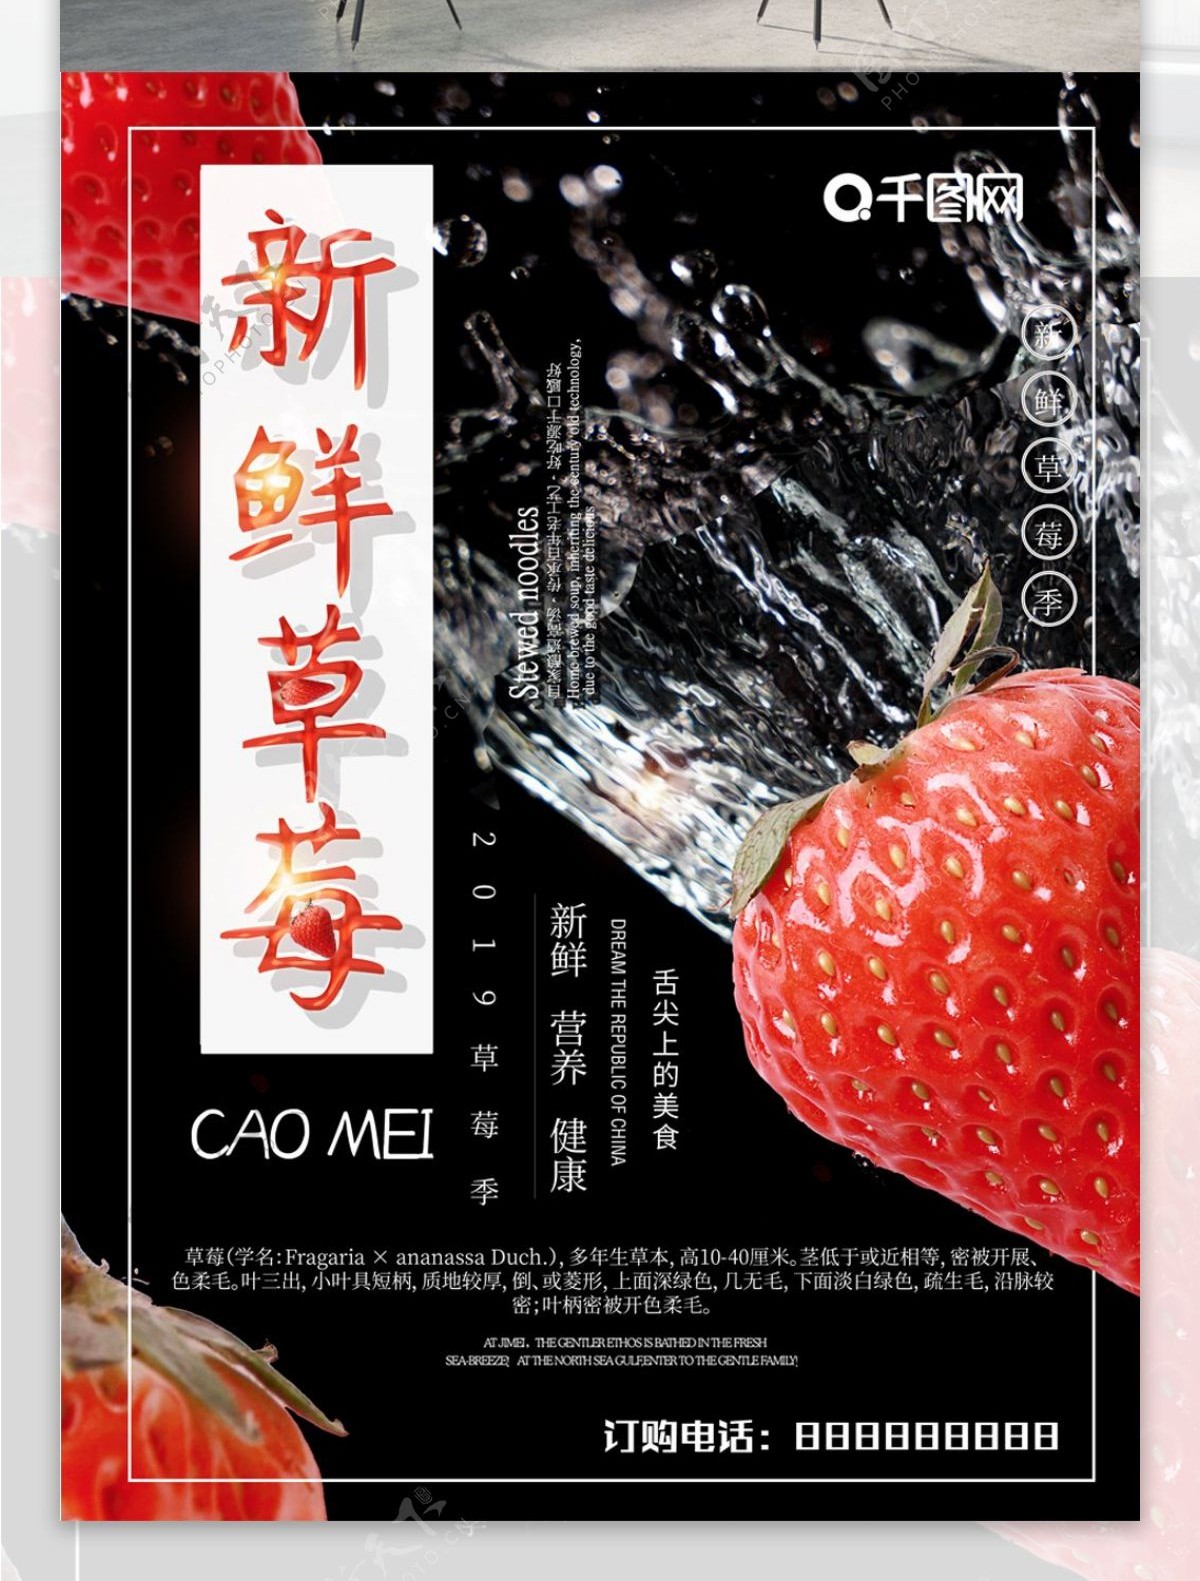 新鲜草莓水果海报